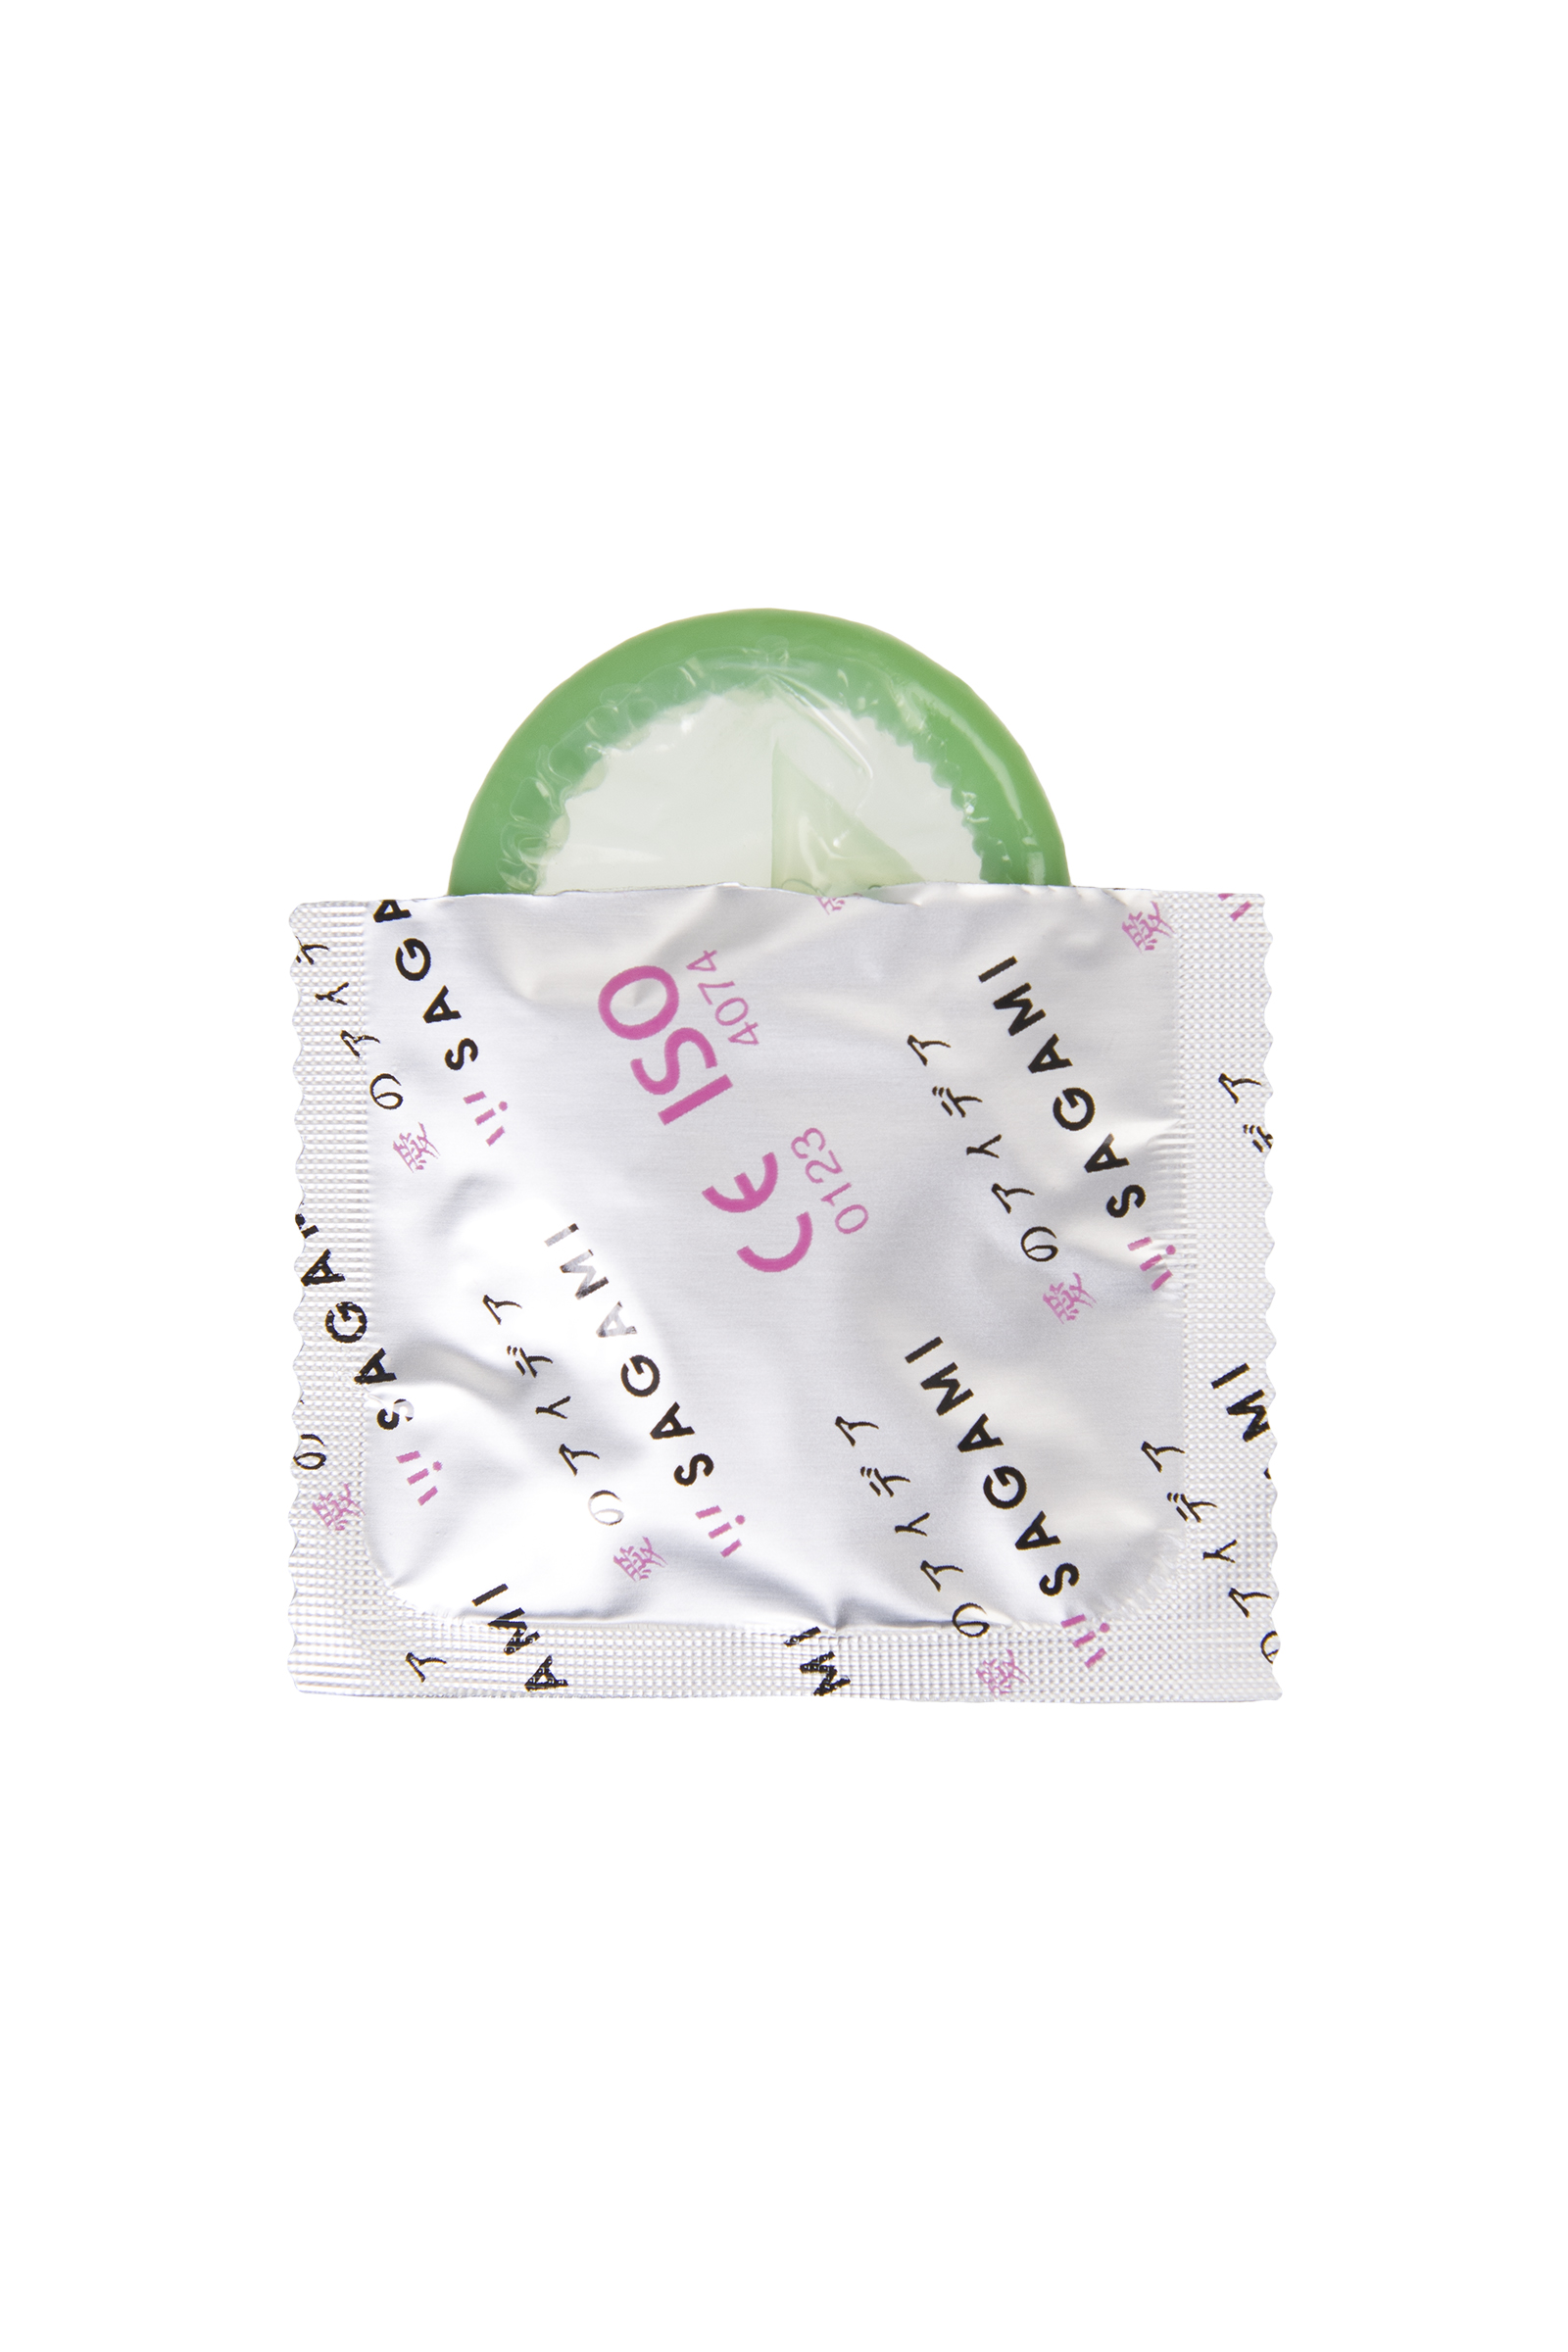 Презервативы ультрапрочные Sagami Xtreme Feel Long с точками, зеленые, 1шт